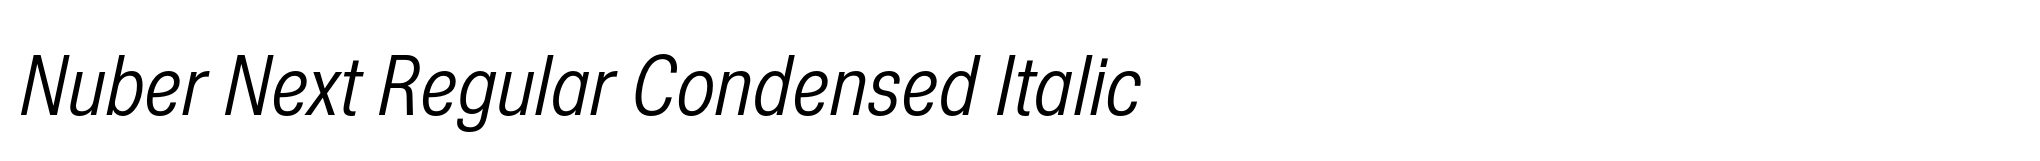 Nuber Next Regular Condensed Italic image